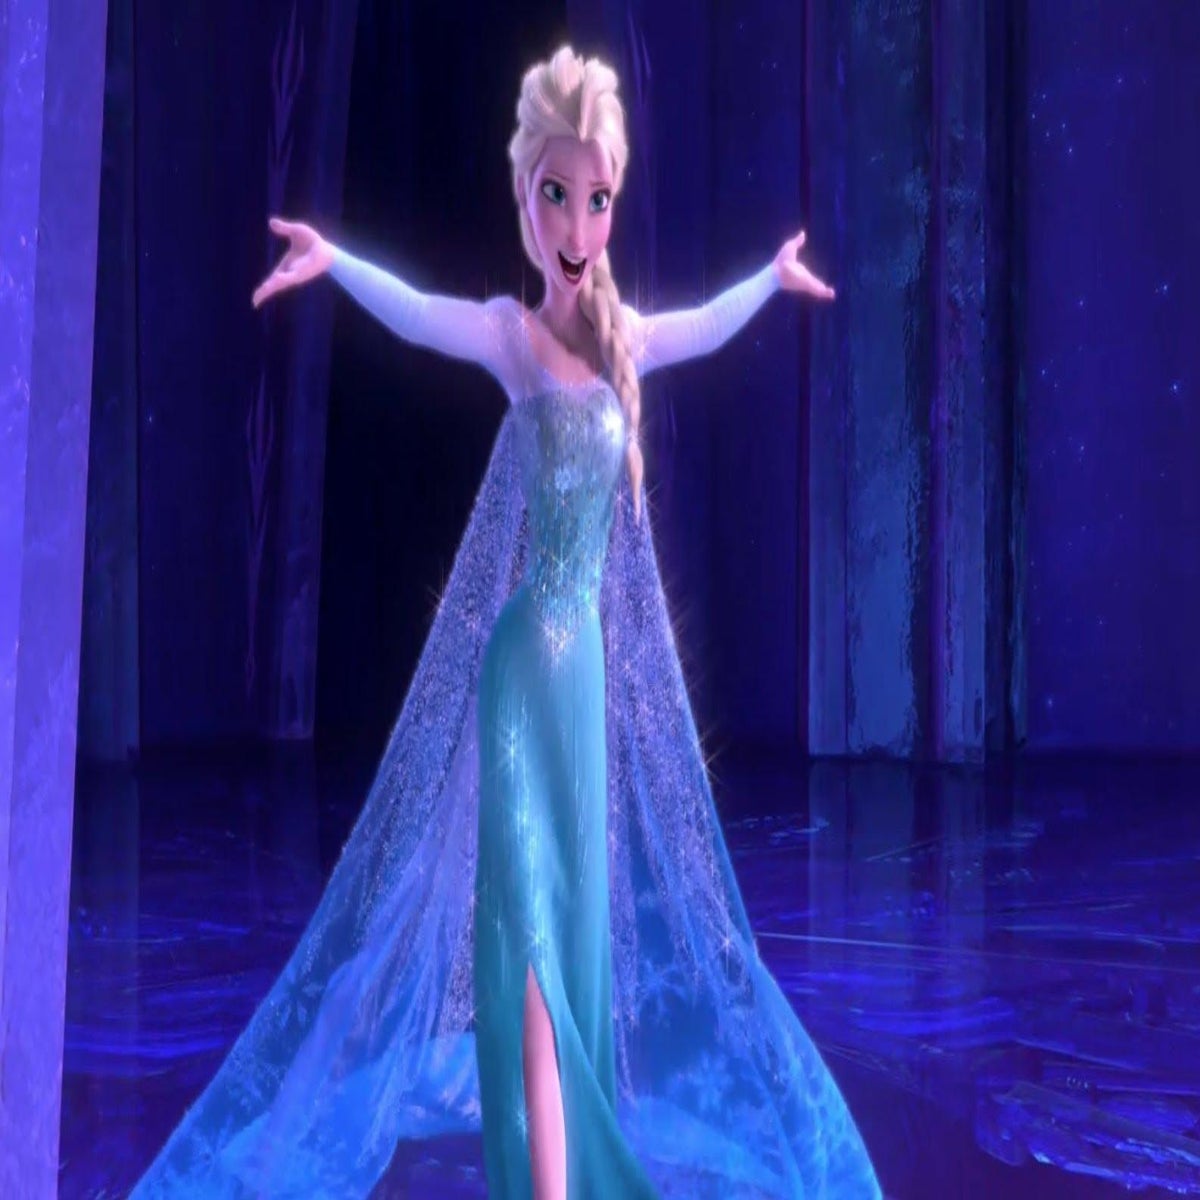 Frozen Original Ending: Elsa Stops Snow Monsters, Hans Makes Avalanche